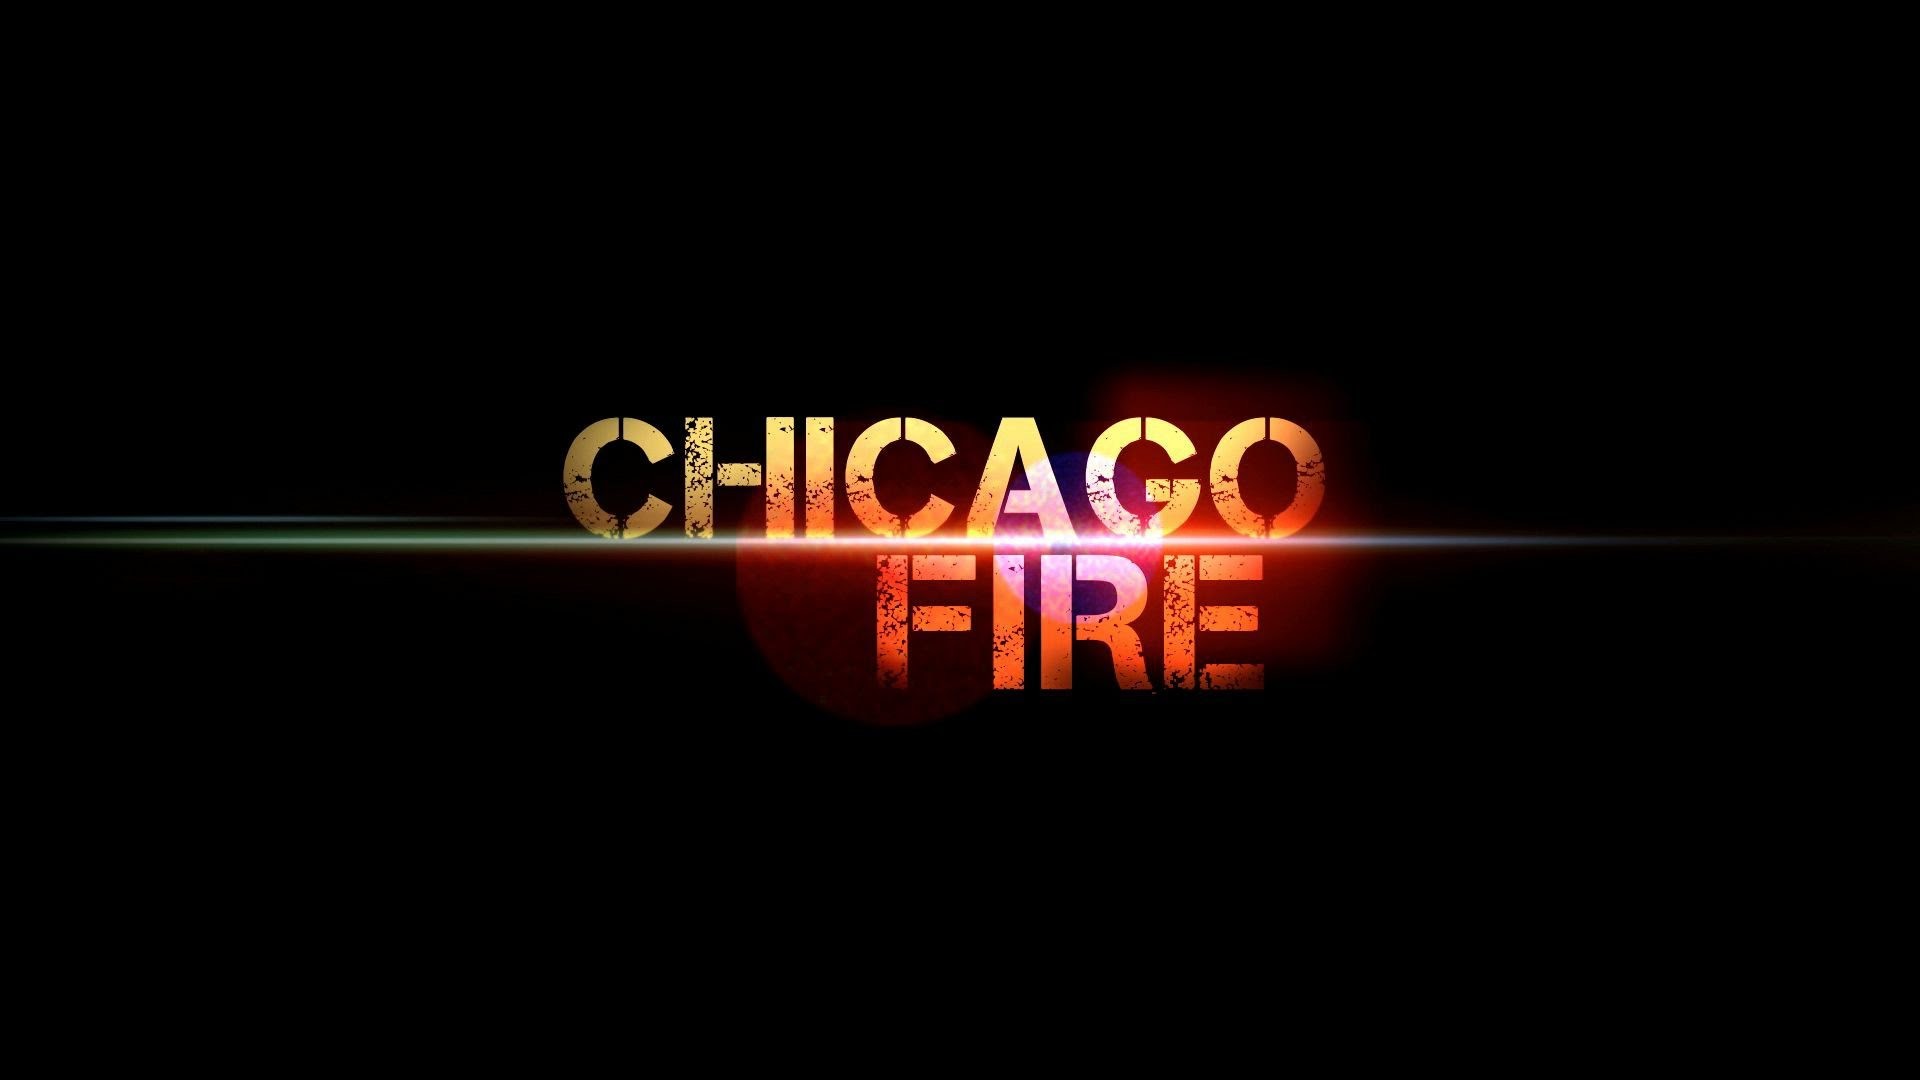 1920x1080 Chicago Fire - Die neue Staffel ab dem 12.01. auf VOX und Online bei VOXNOW  - YouTube